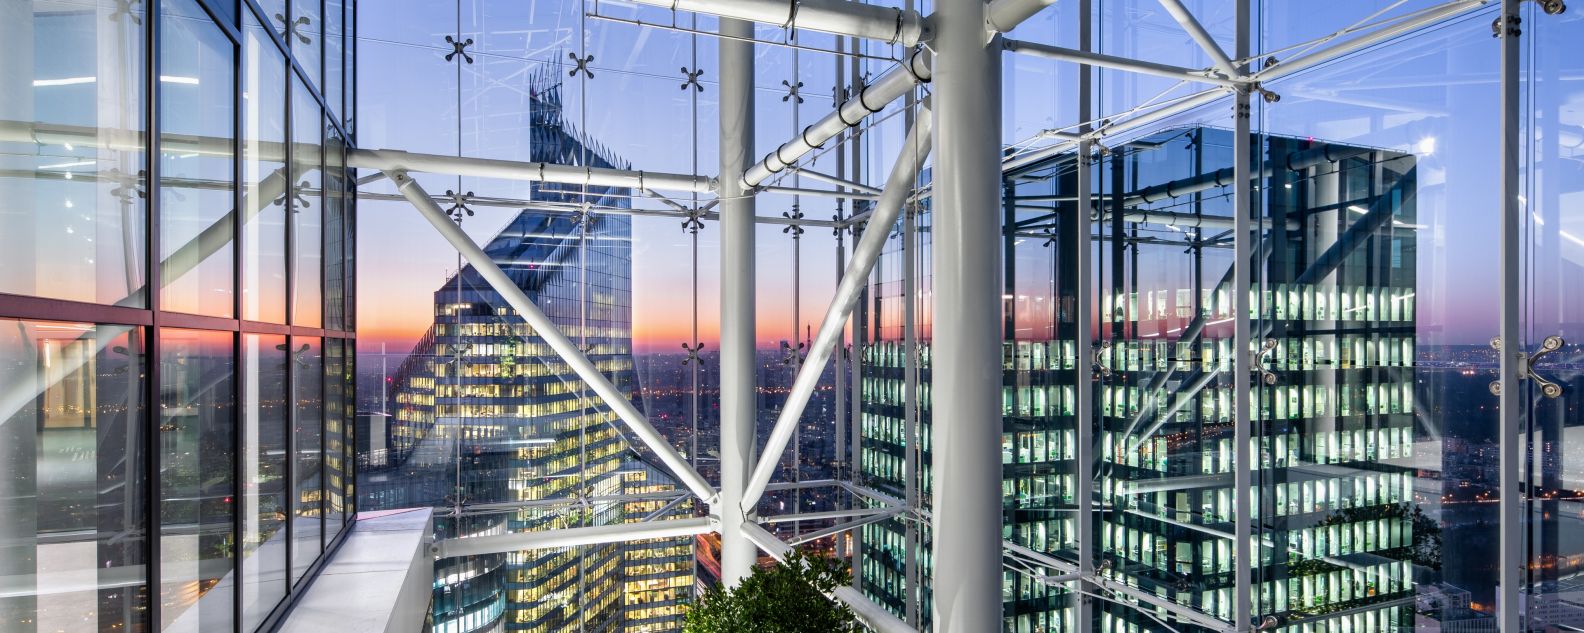 Foto de vista de la ciudad desde un edificio con estructura de vigas interconectadas y vidrio